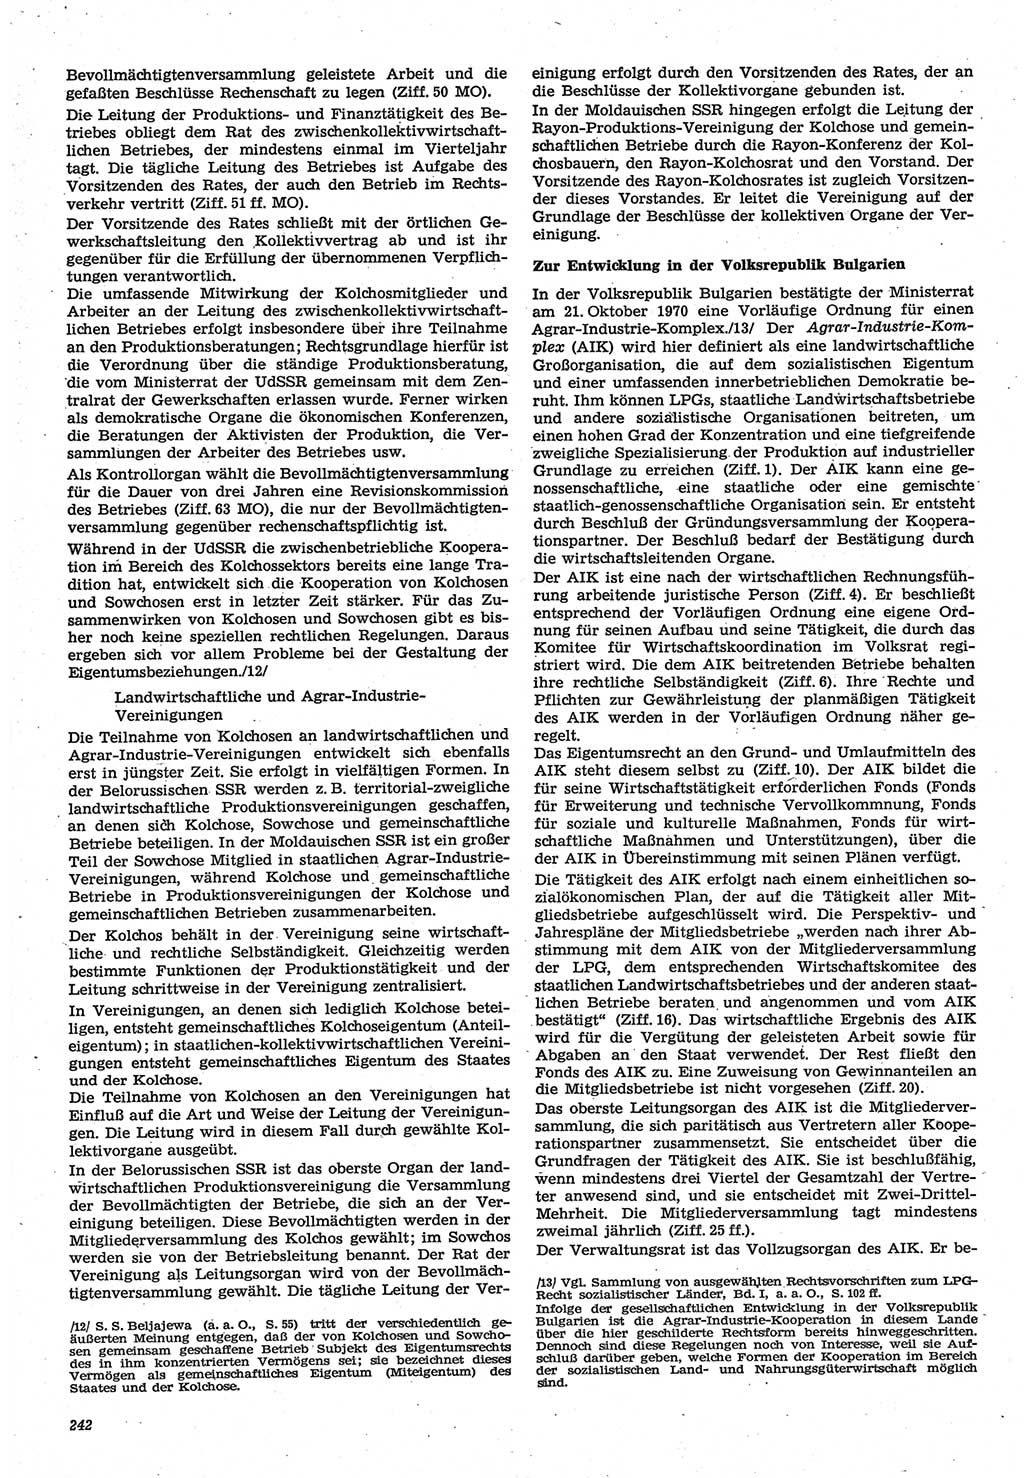 Neue Justiz (NJ), Zeitschrift für Recht und Rechtswissenschaft-Zeitschrift, sozialistisches Recht und Gesetzlichkeit, 31. Jahrgang 1977, Seite 242 (NJ DDR 1977, S. 242)